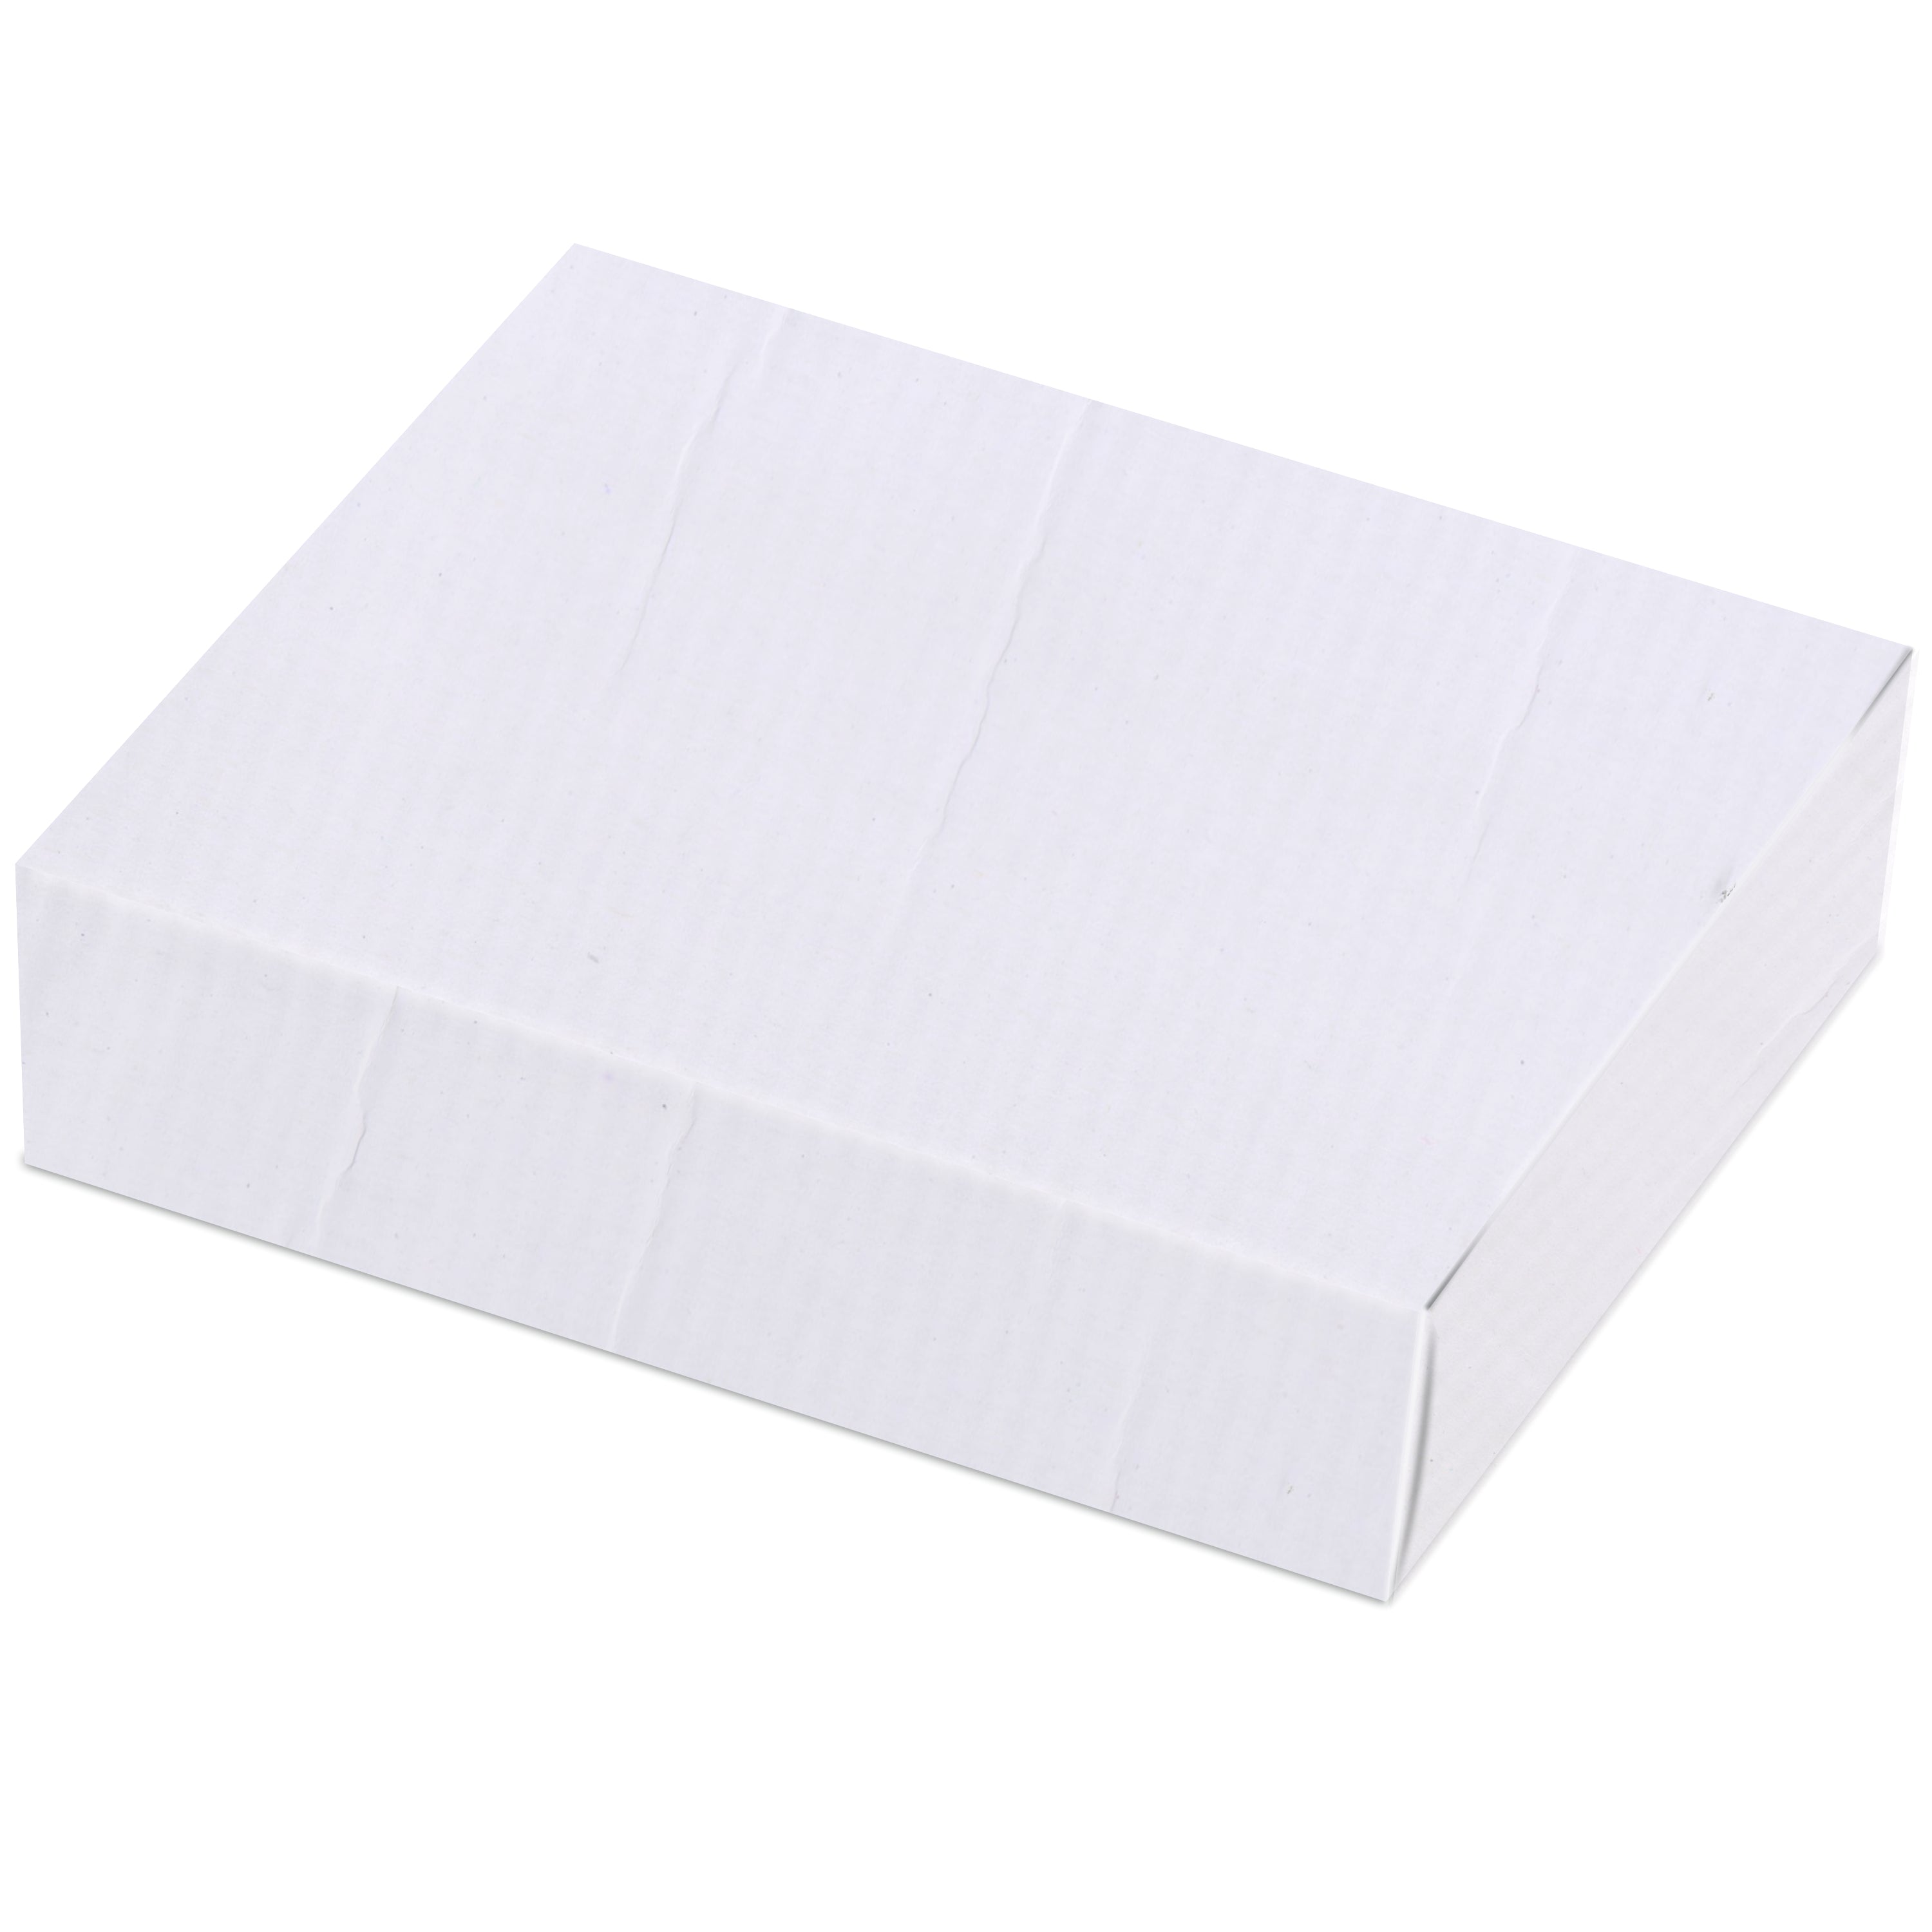 Zenvista Premium White Corrugated Box |13 x 4.6 x 18.5 cm | Pack of 20